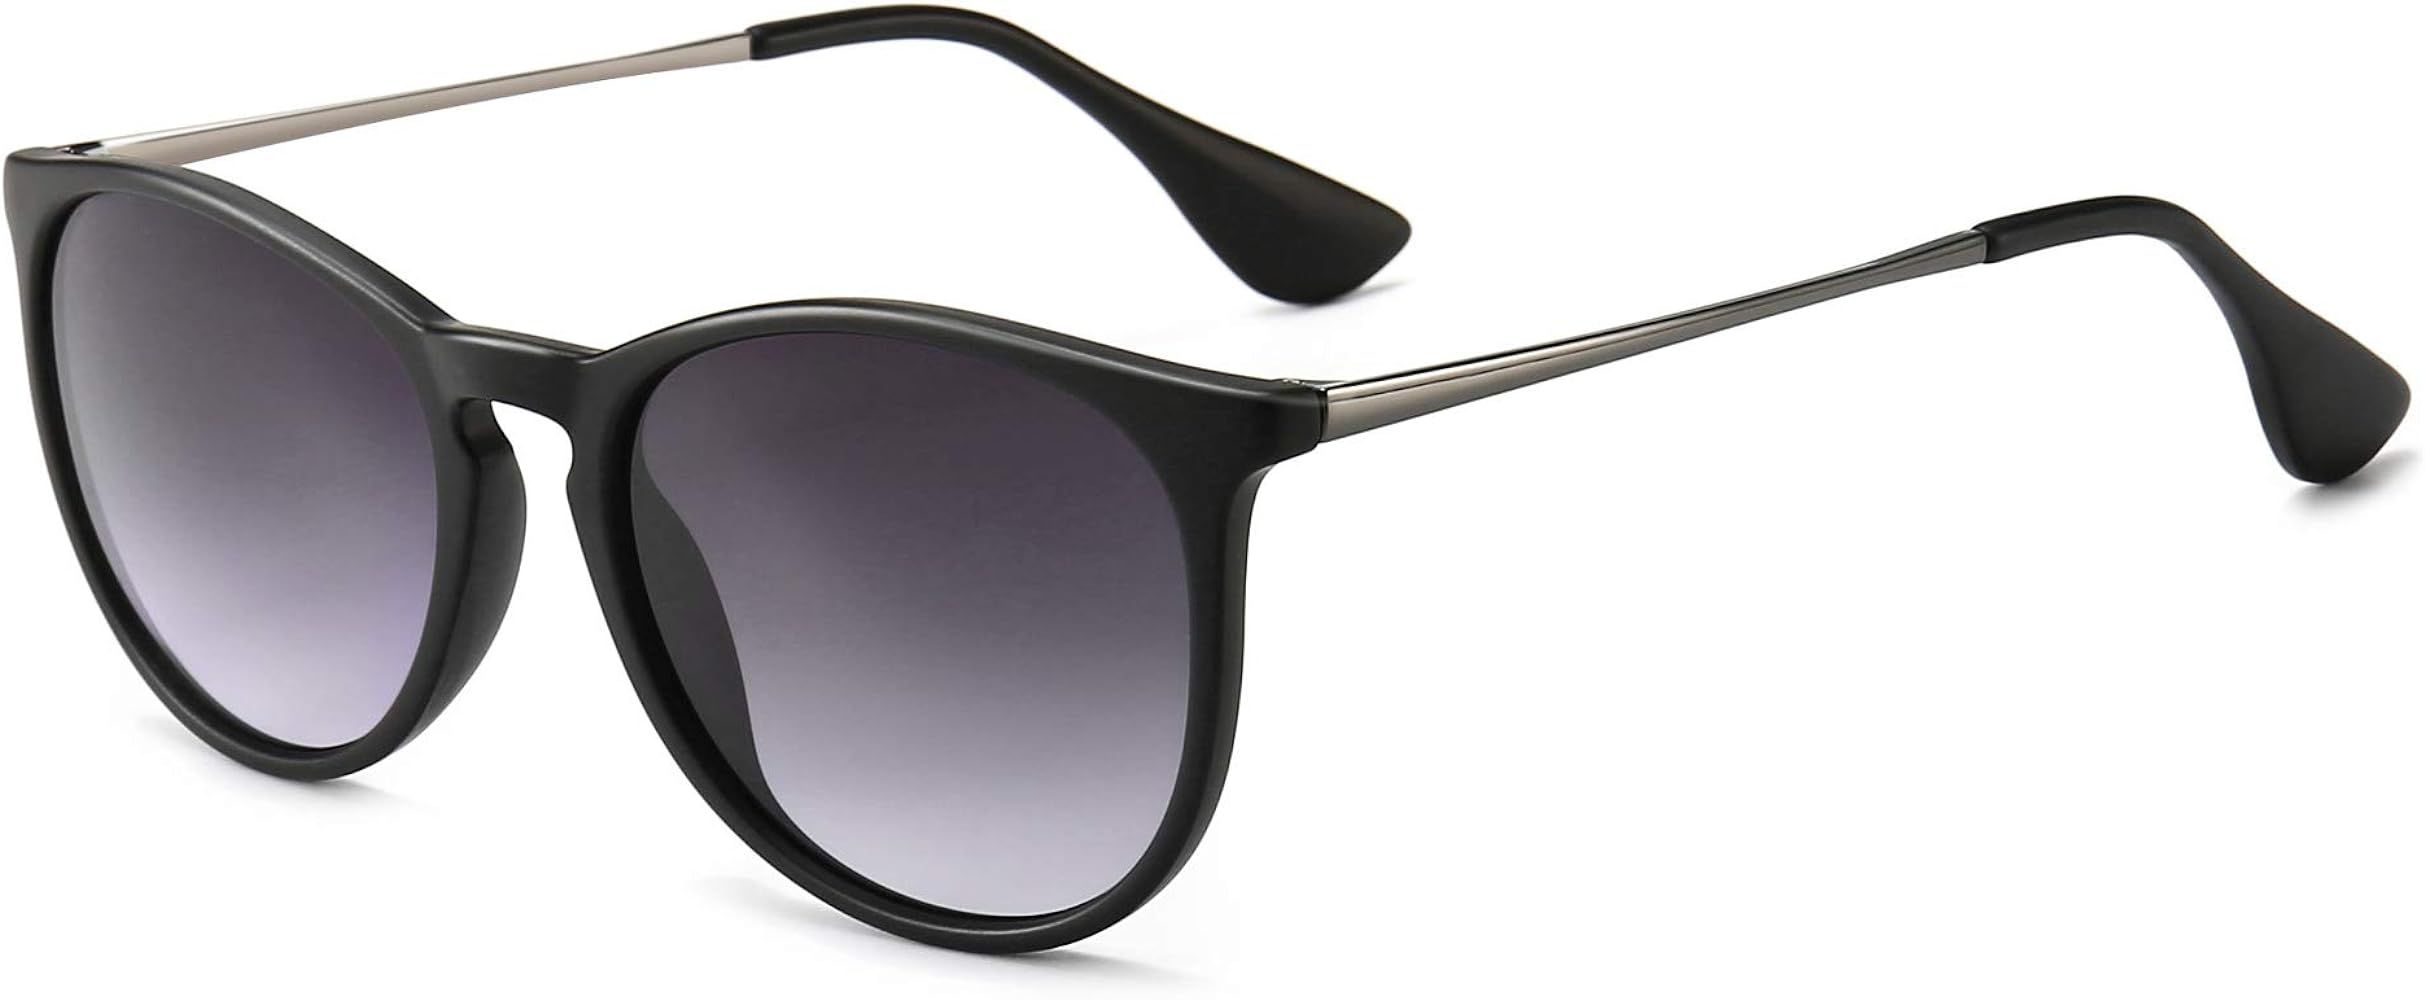 SUNGAIT Vintage Round Sunglasses for Women Men Classic Retro Designer Style | Amazon (US)